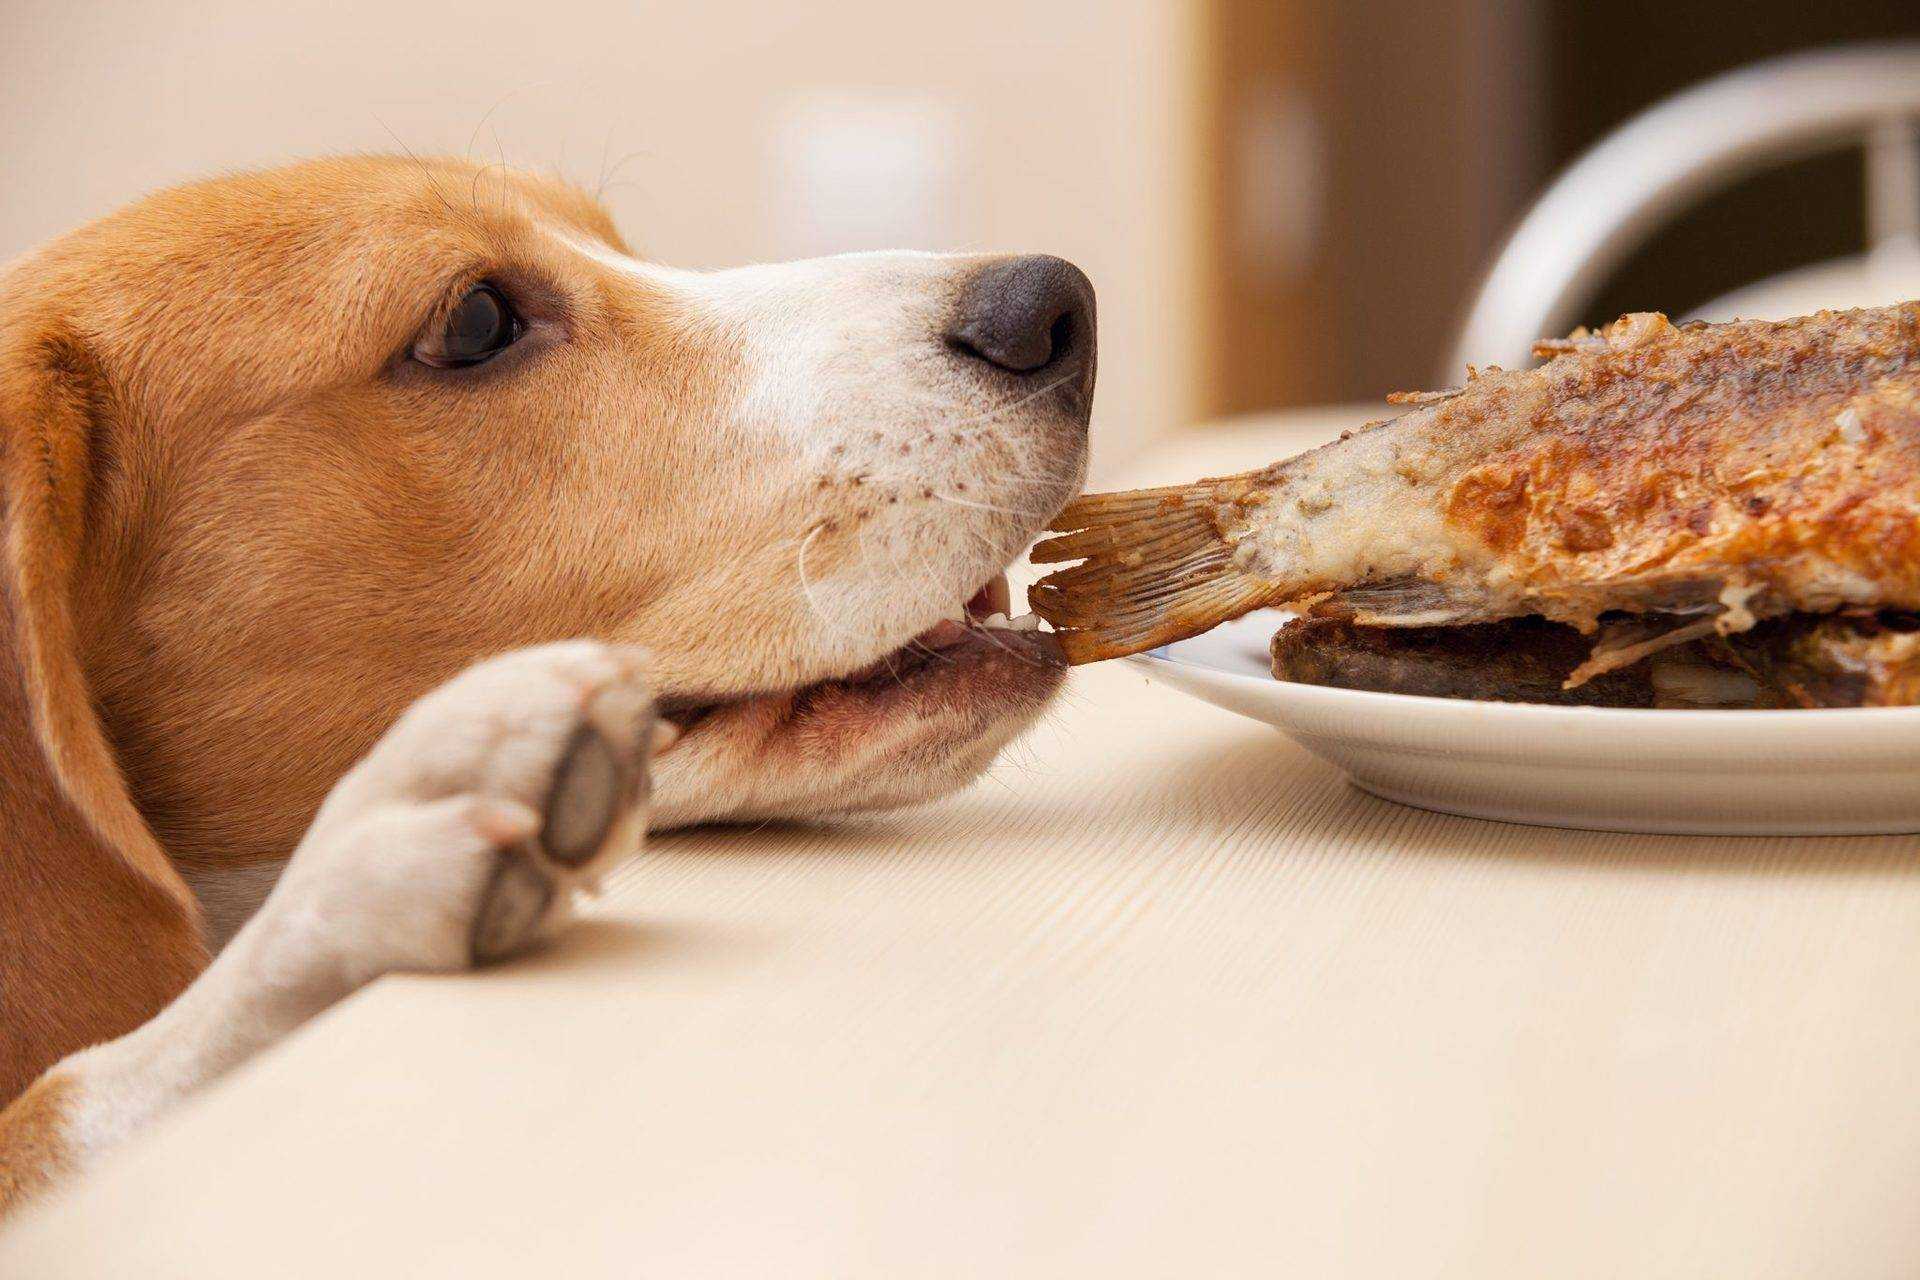 Чем нельзя кормить собаку: запрещенные и опасные продукты